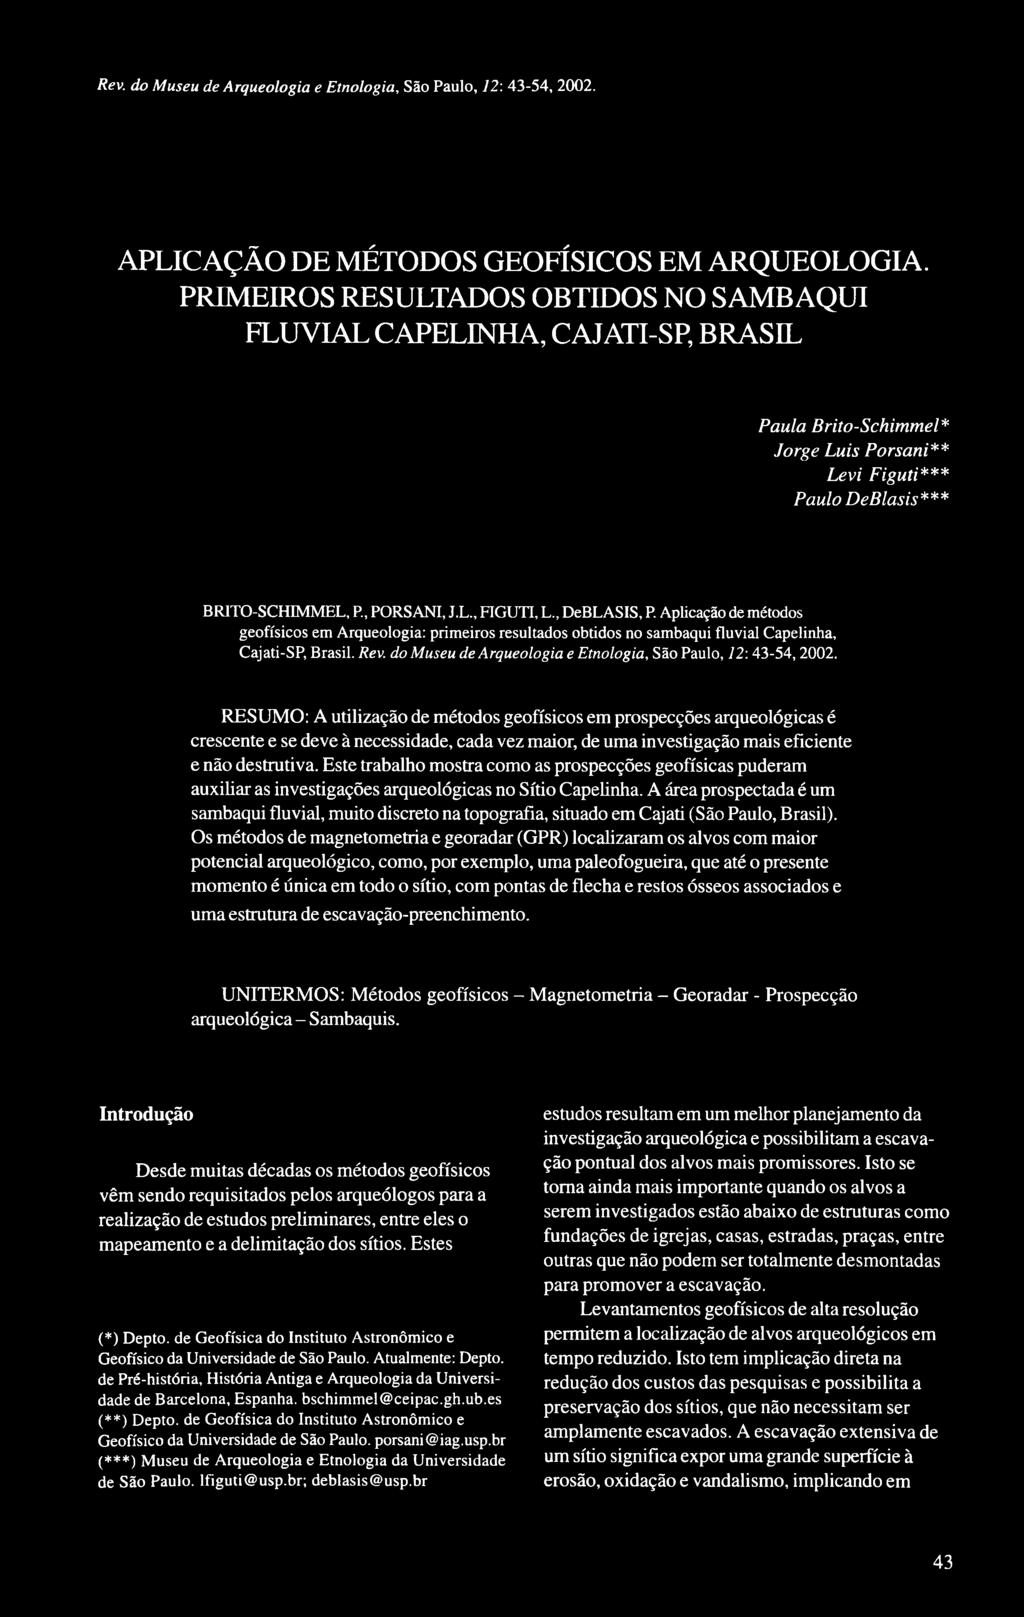 , DeBLASIS, P. Aplicação de métodos geofísicos em Arqueologia: primeiros resultados obtidos no sambaqui fluvial Capelinha, Cajati-SP, Brasil. Rev.